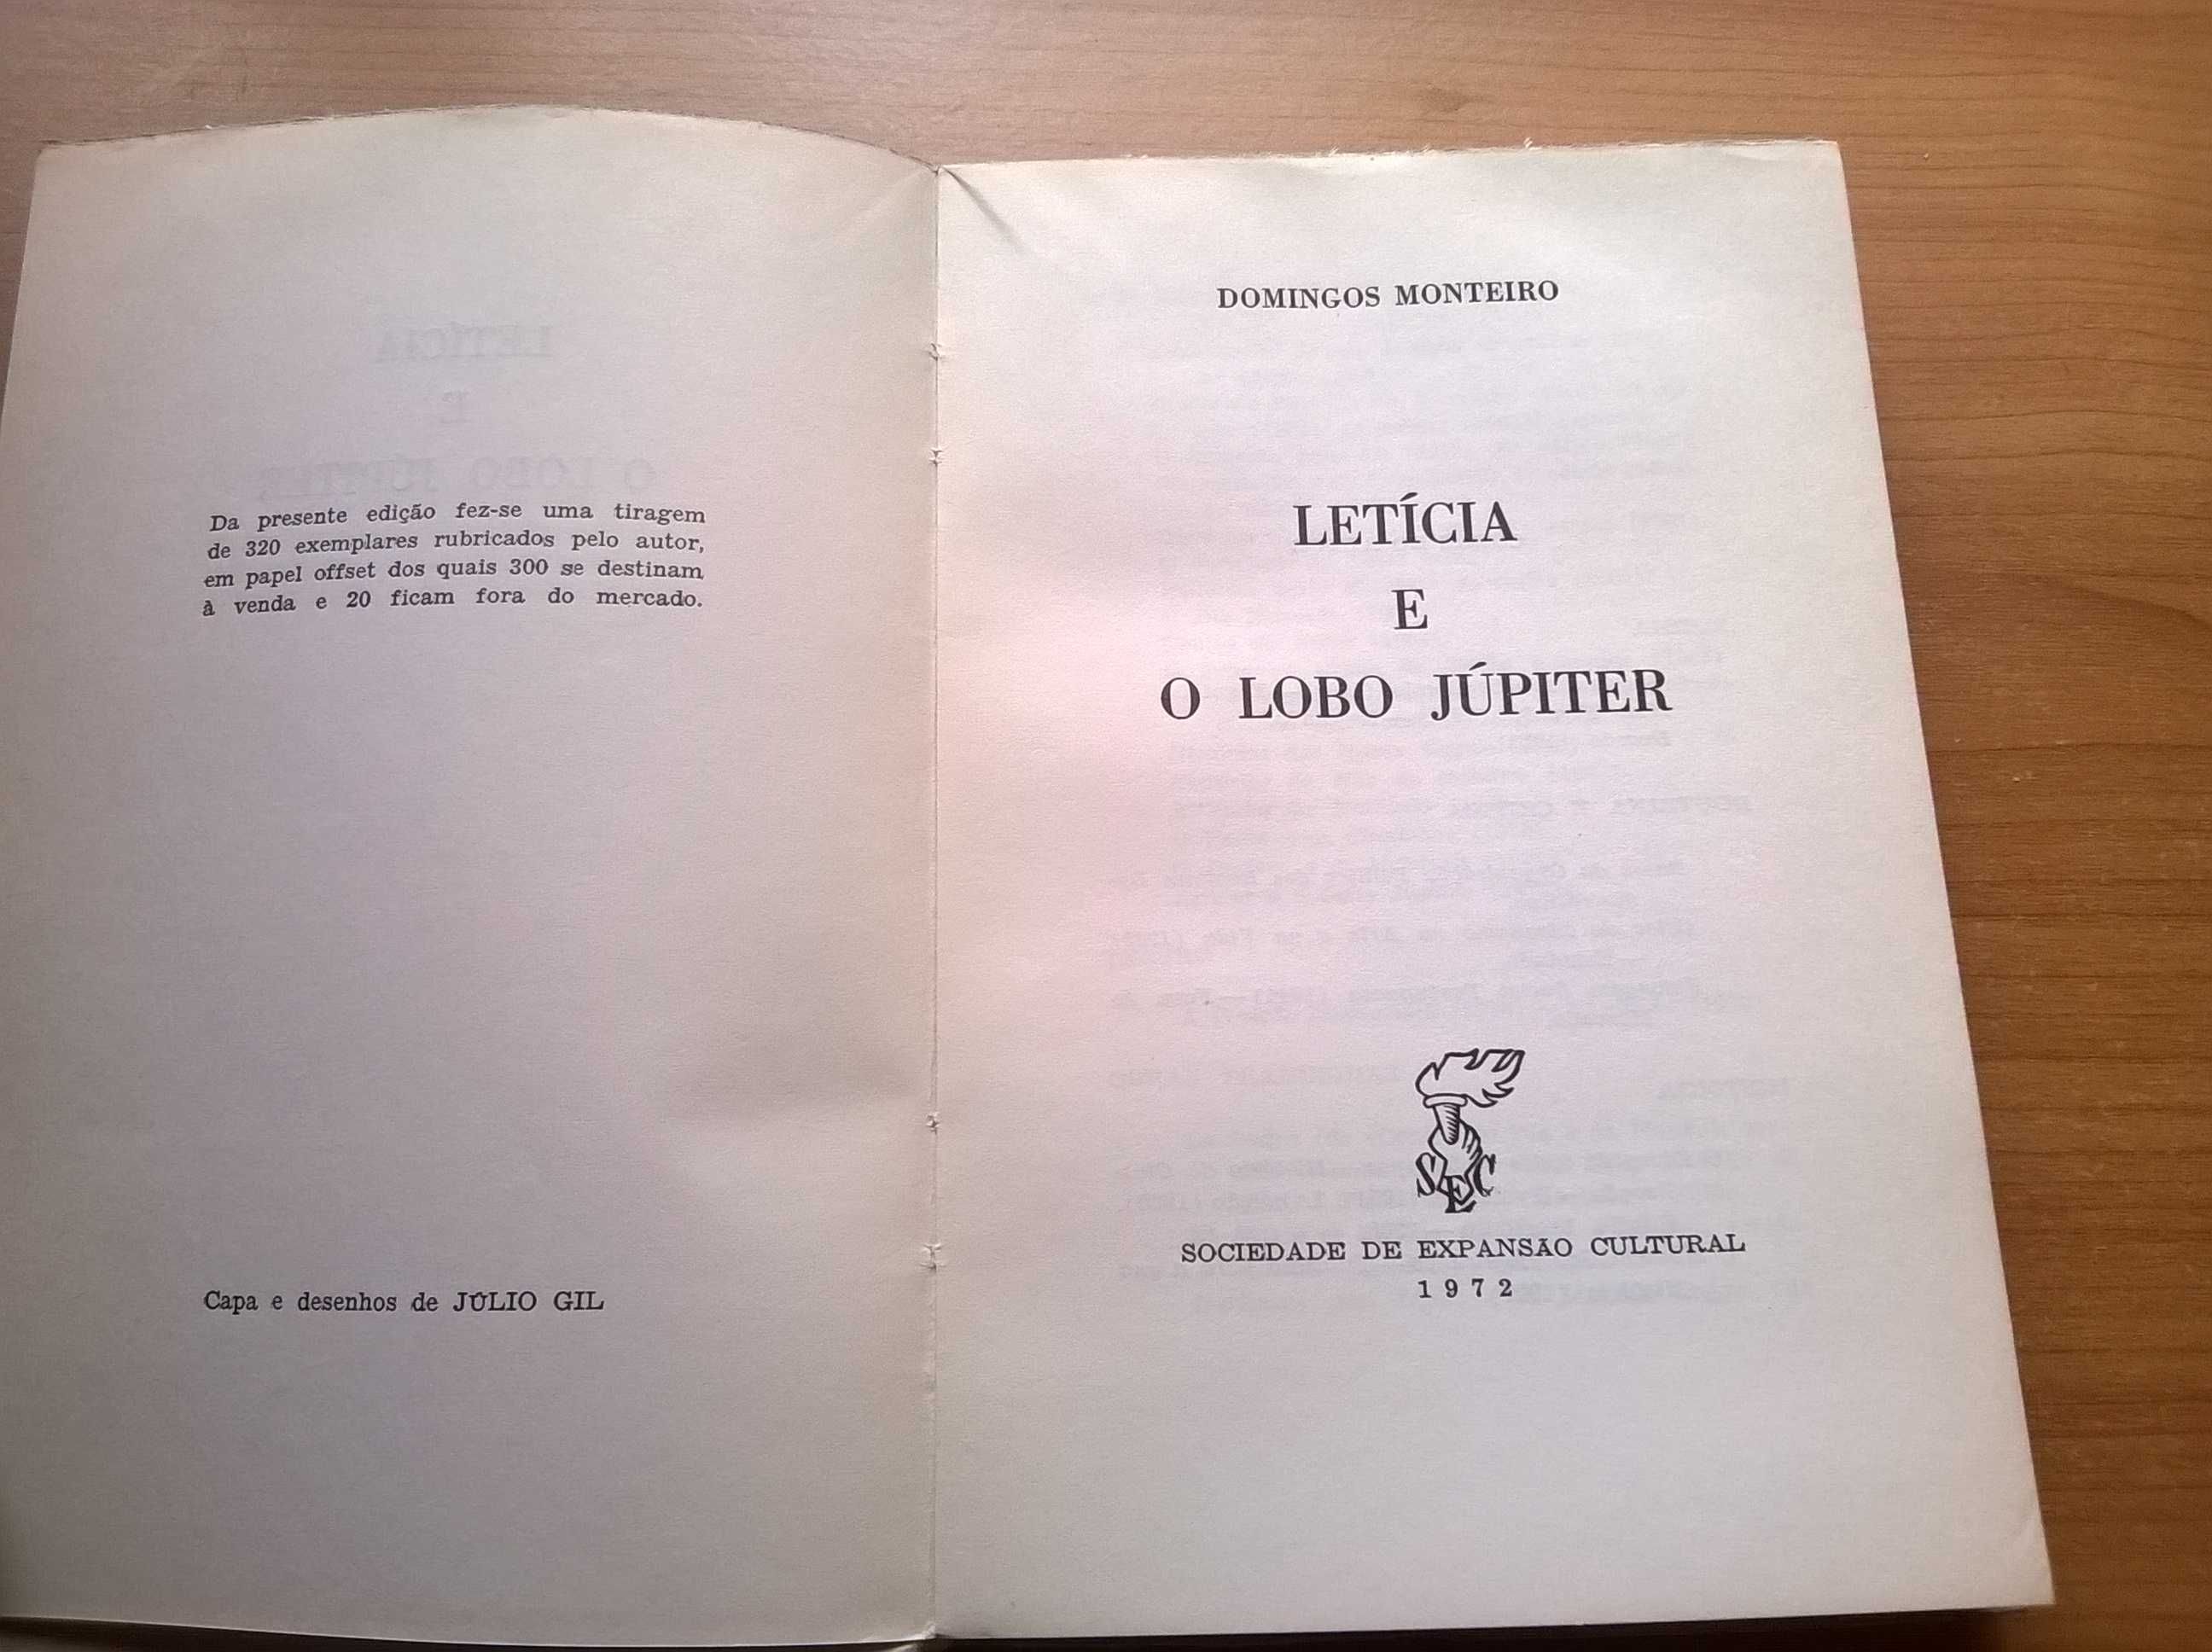 Letícia e o Lobo Júpiter (1.ª ed. autografado) - Domingos Monteiro